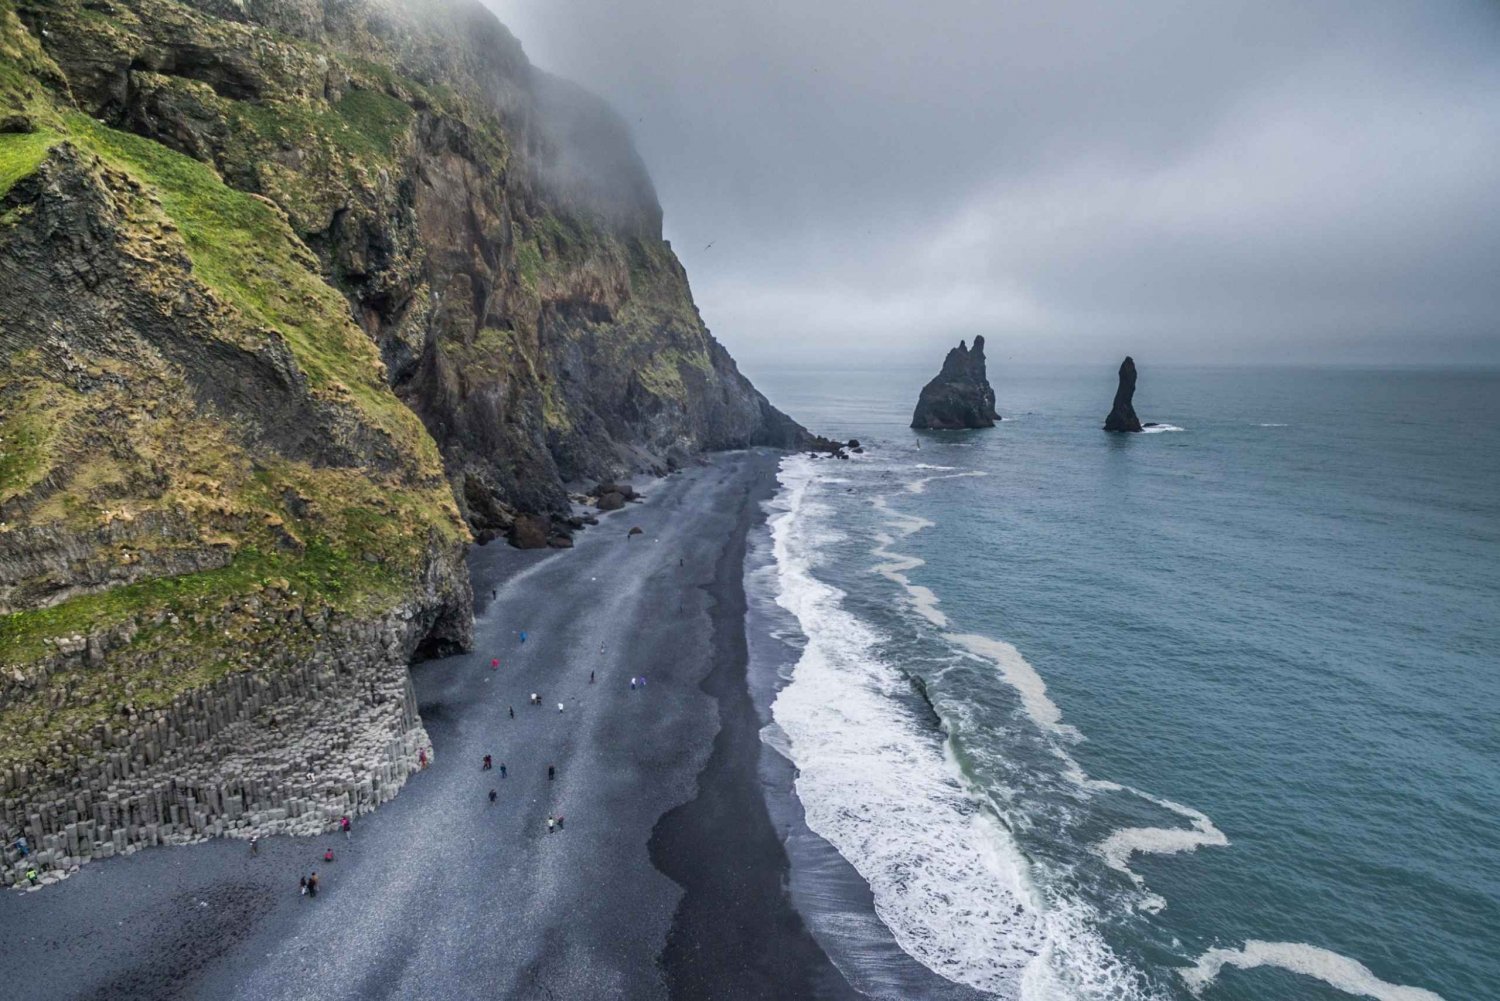 Fra Reykjavik: Lille gruppe på sydkysten og gletsjervandring